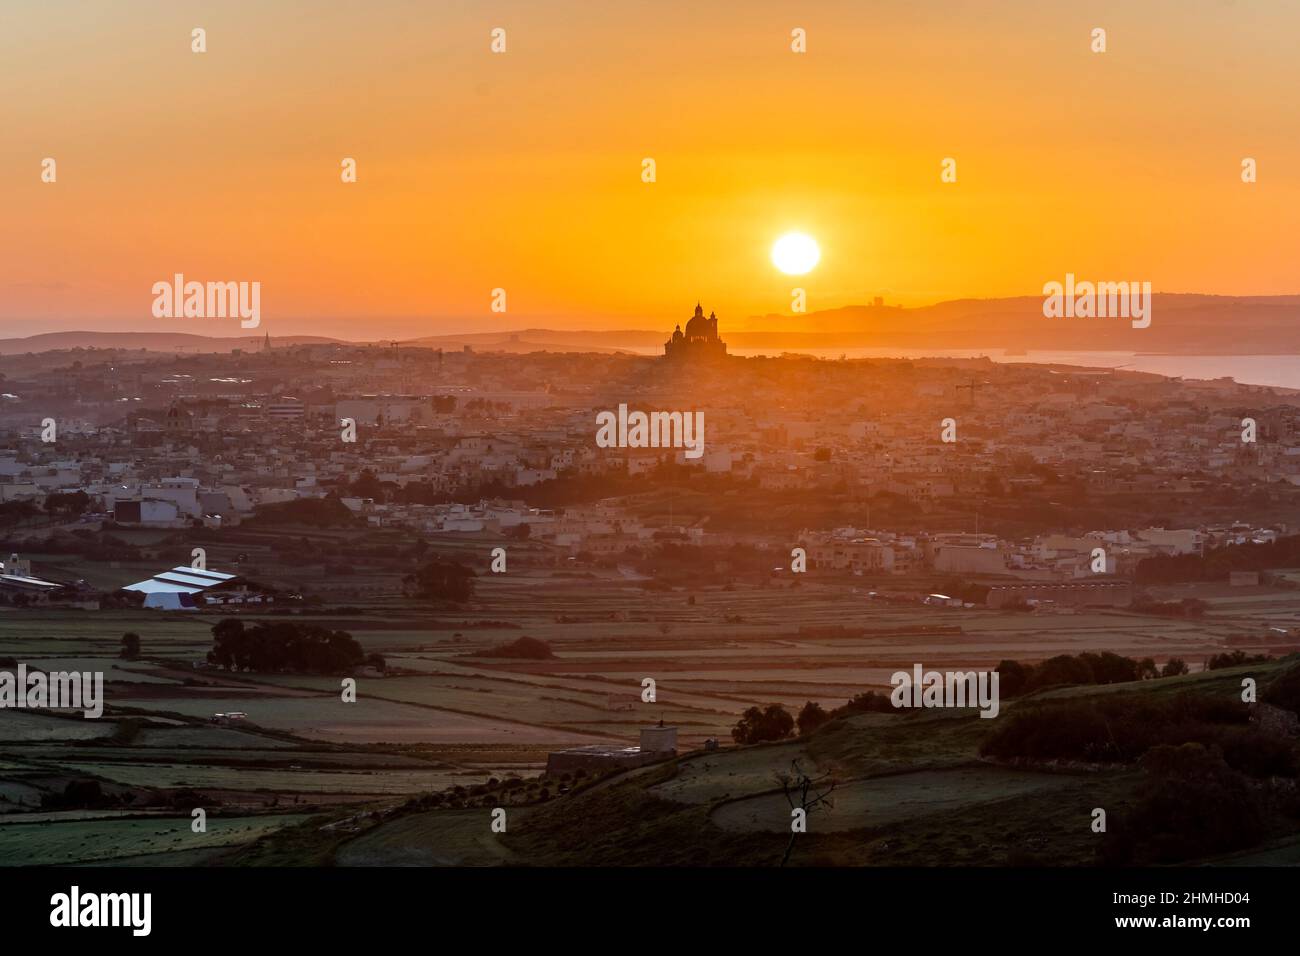 Le dernier jour de l'année, le soleil du matin se lève juste derrière la basilique de Goza, Malte, baignant le paysage en lumière dorée. Banque D'Images